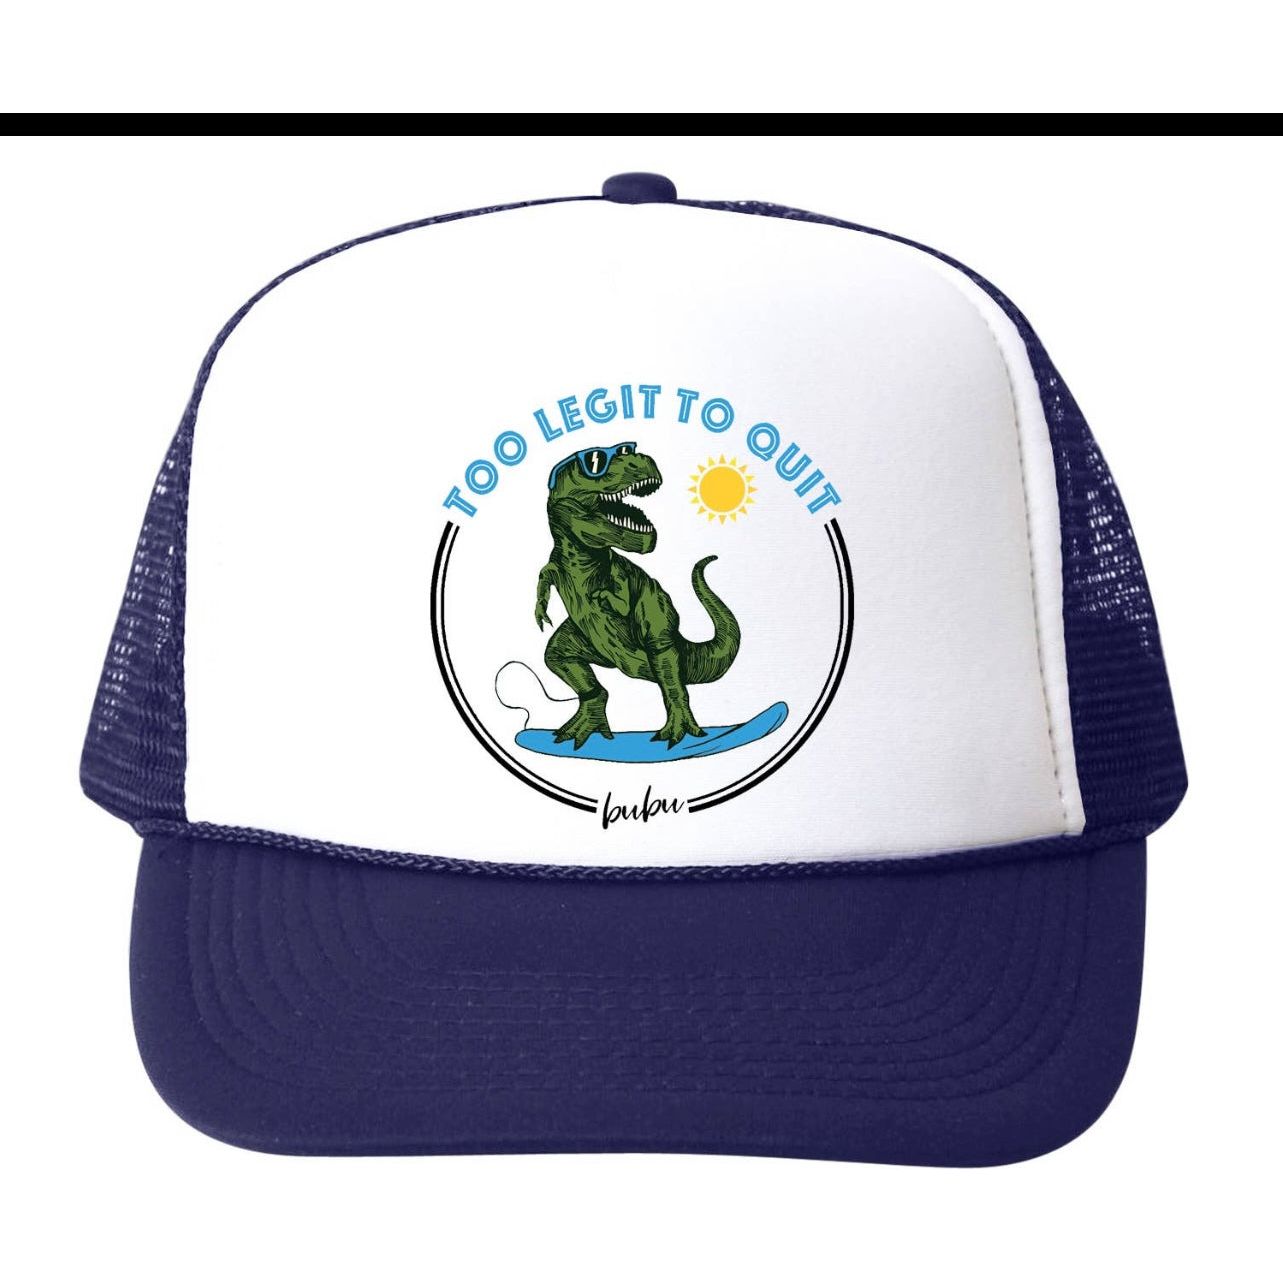 too legit to quit trucker hat